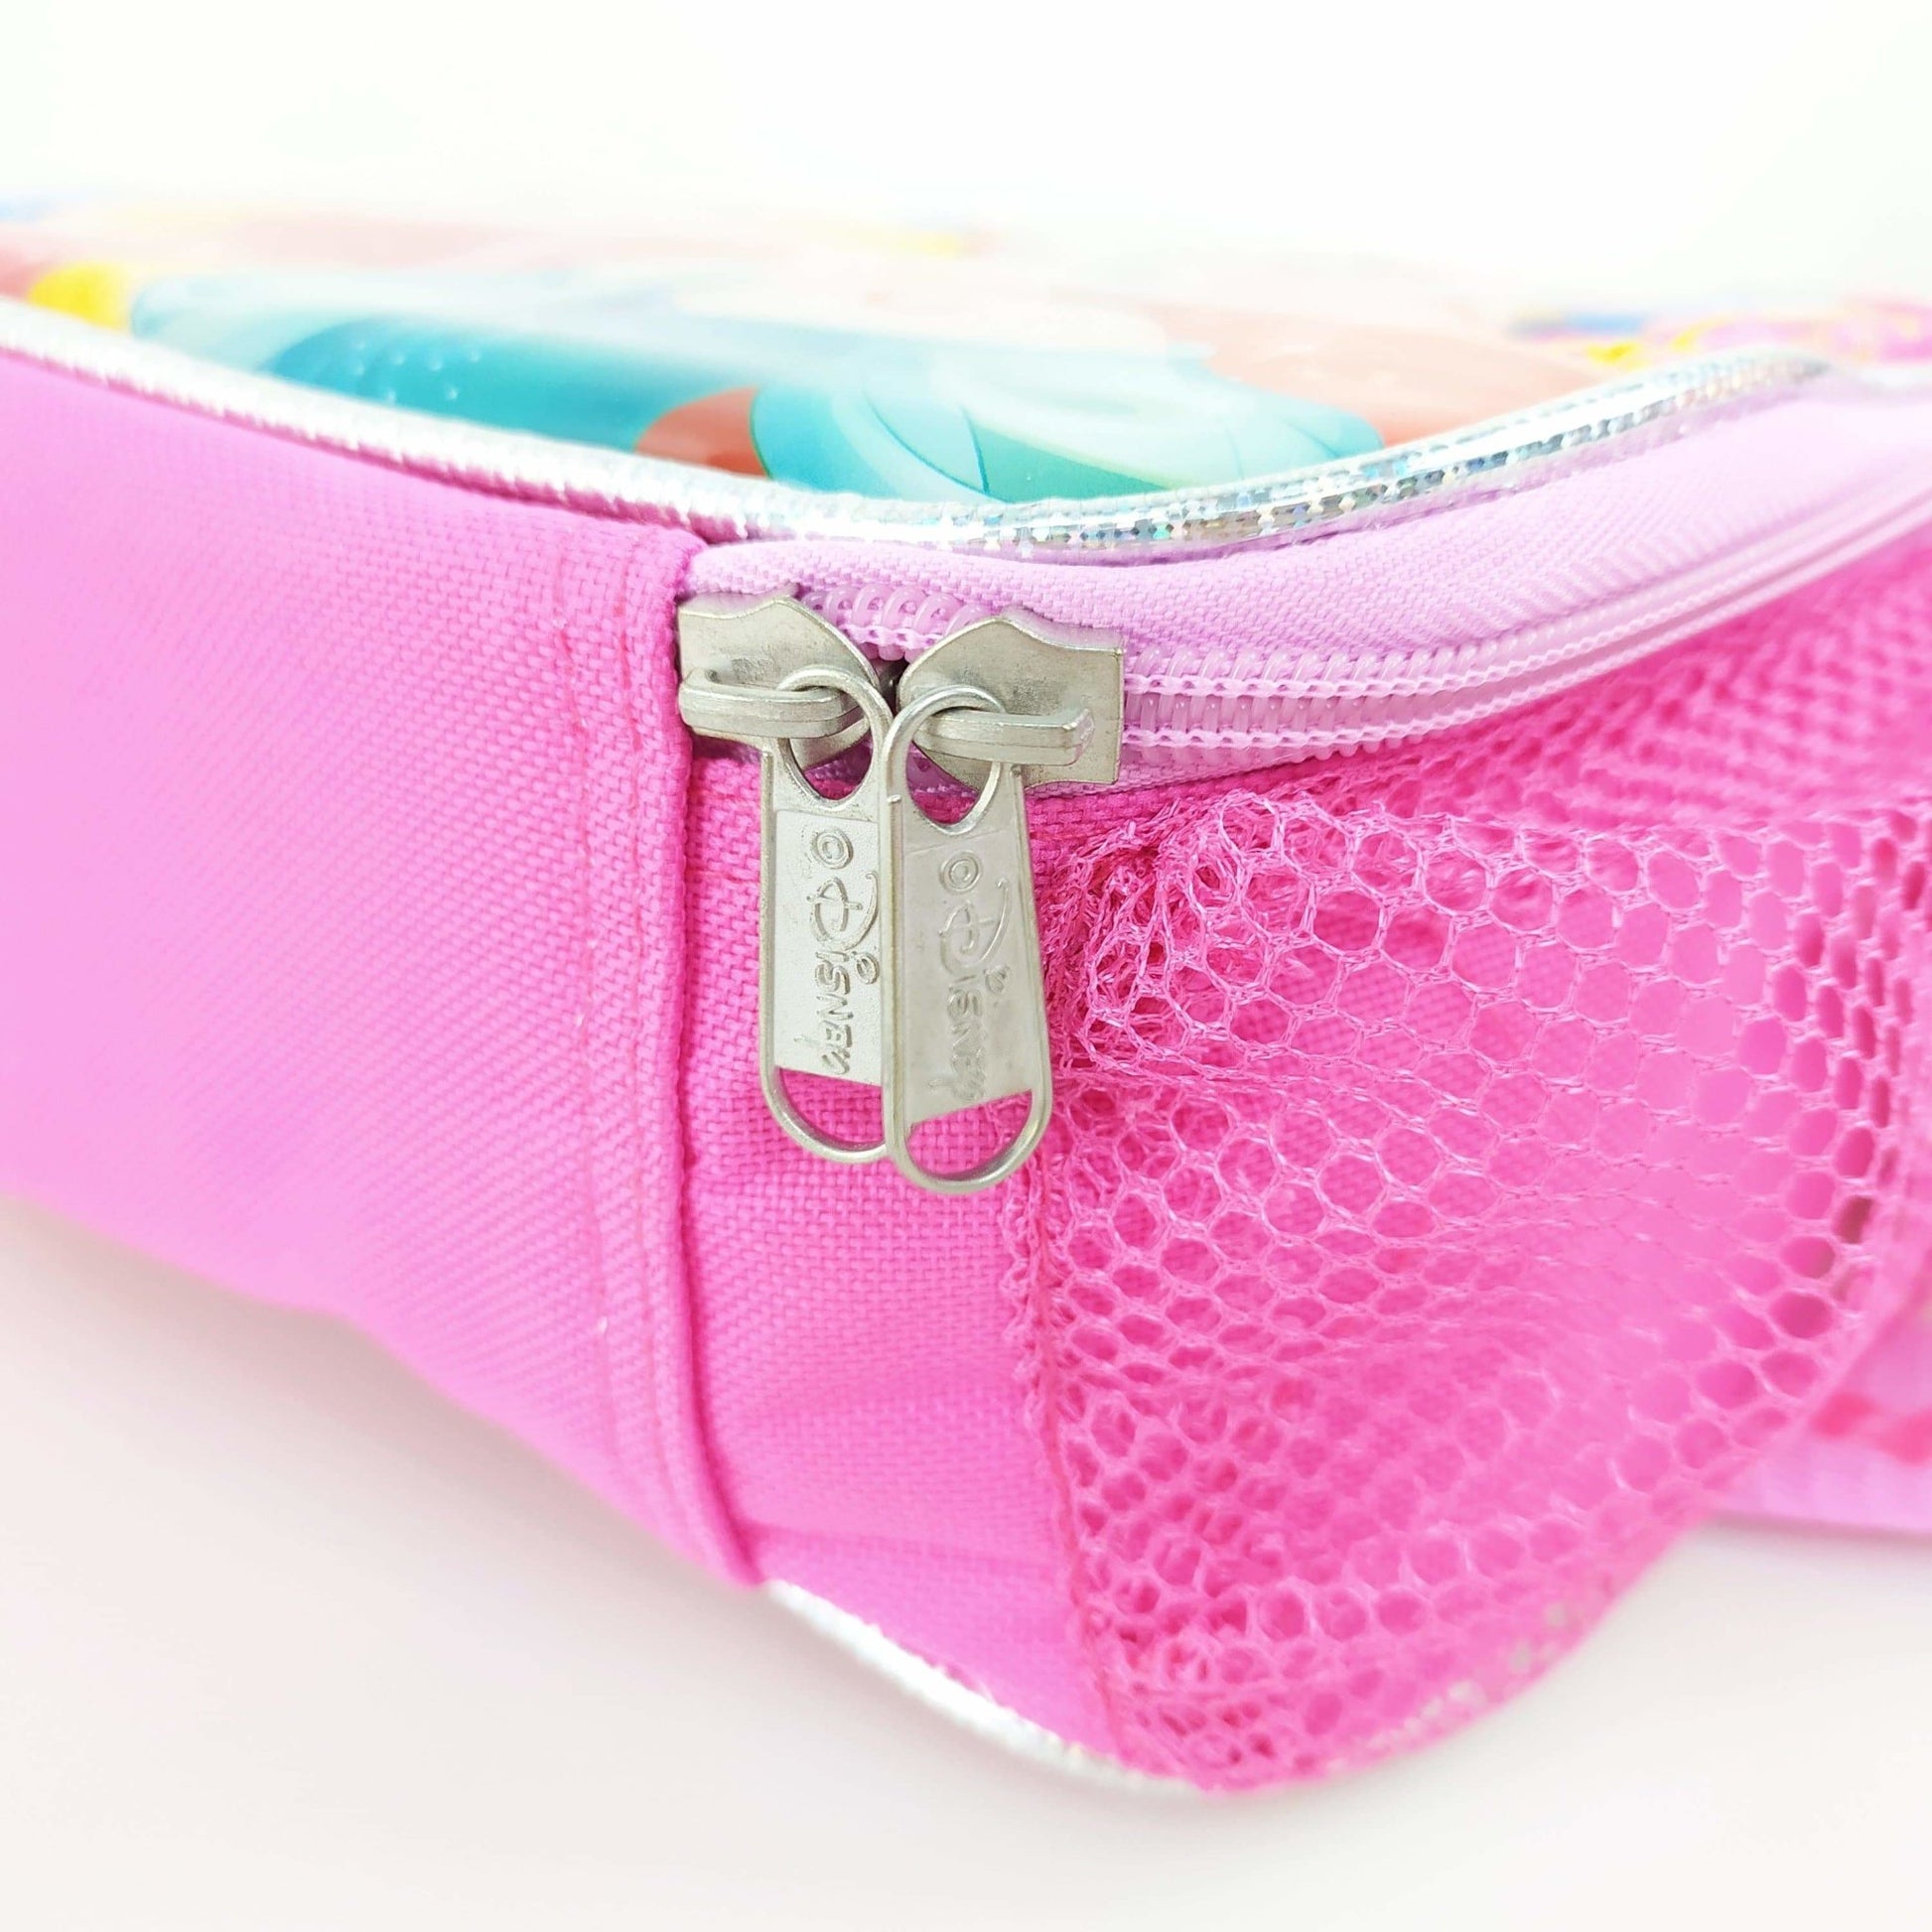 Disney Princess - Lunch Kit / Sling Tote Bag (Shoulder Bag, Cross Body Bag) - Simply Life